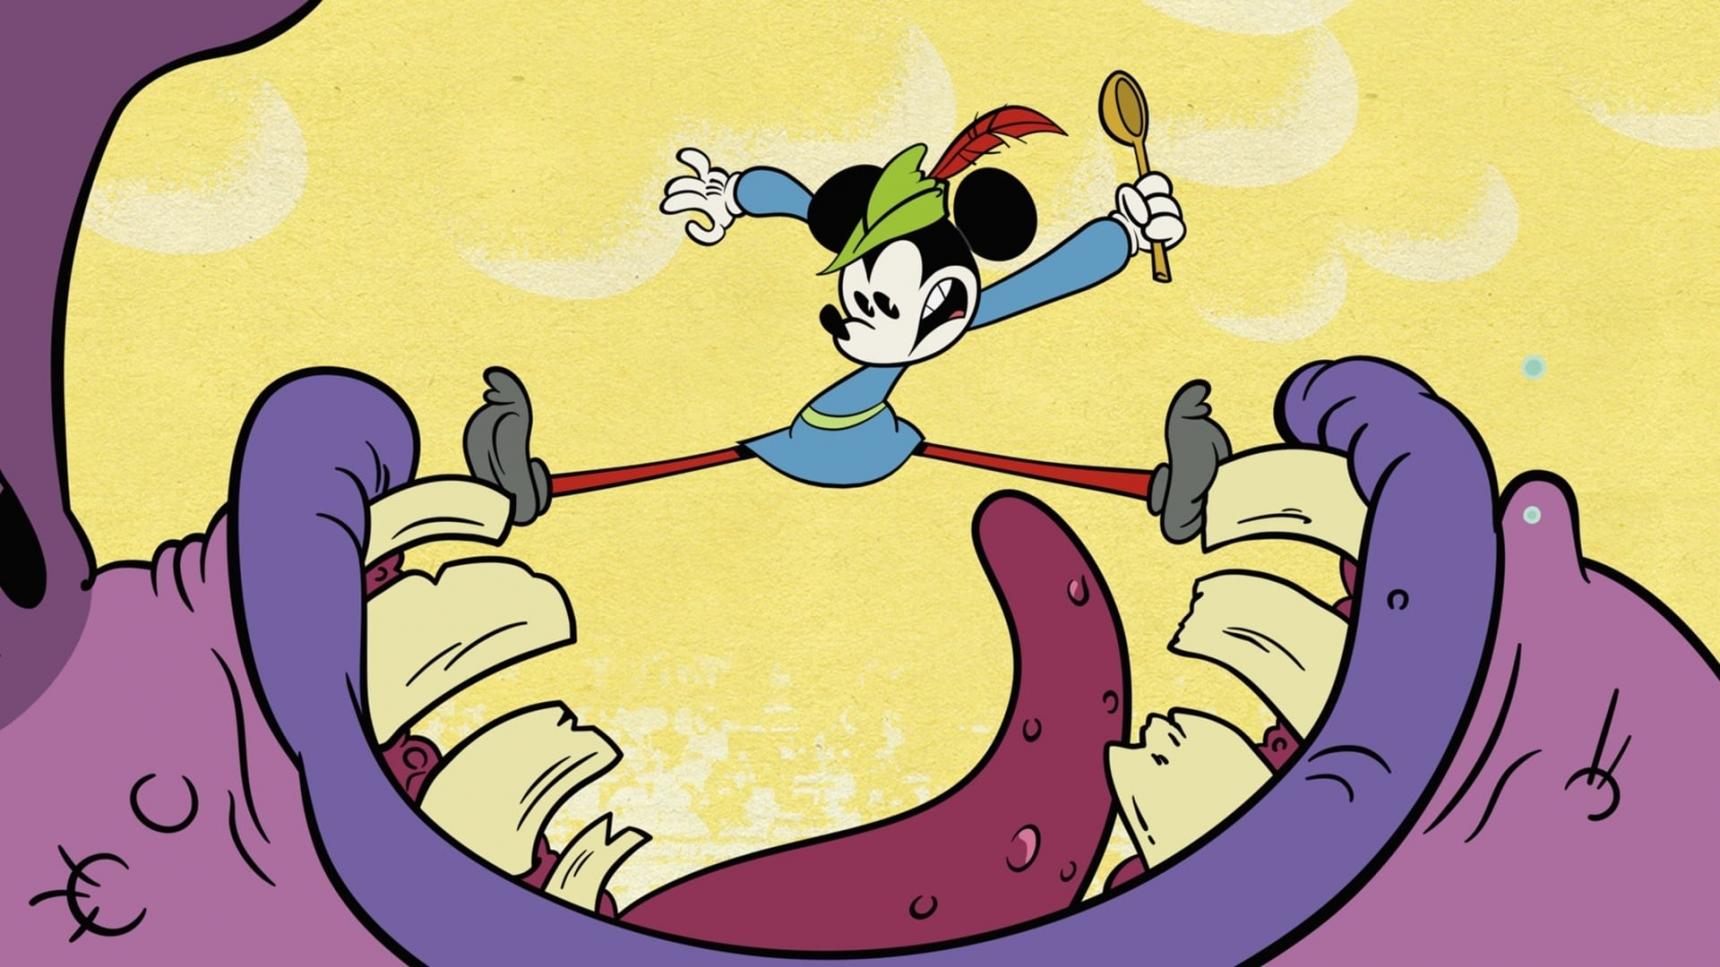 Poster del episodio 7 de El maravilloso mundo de Mickey Mouse online